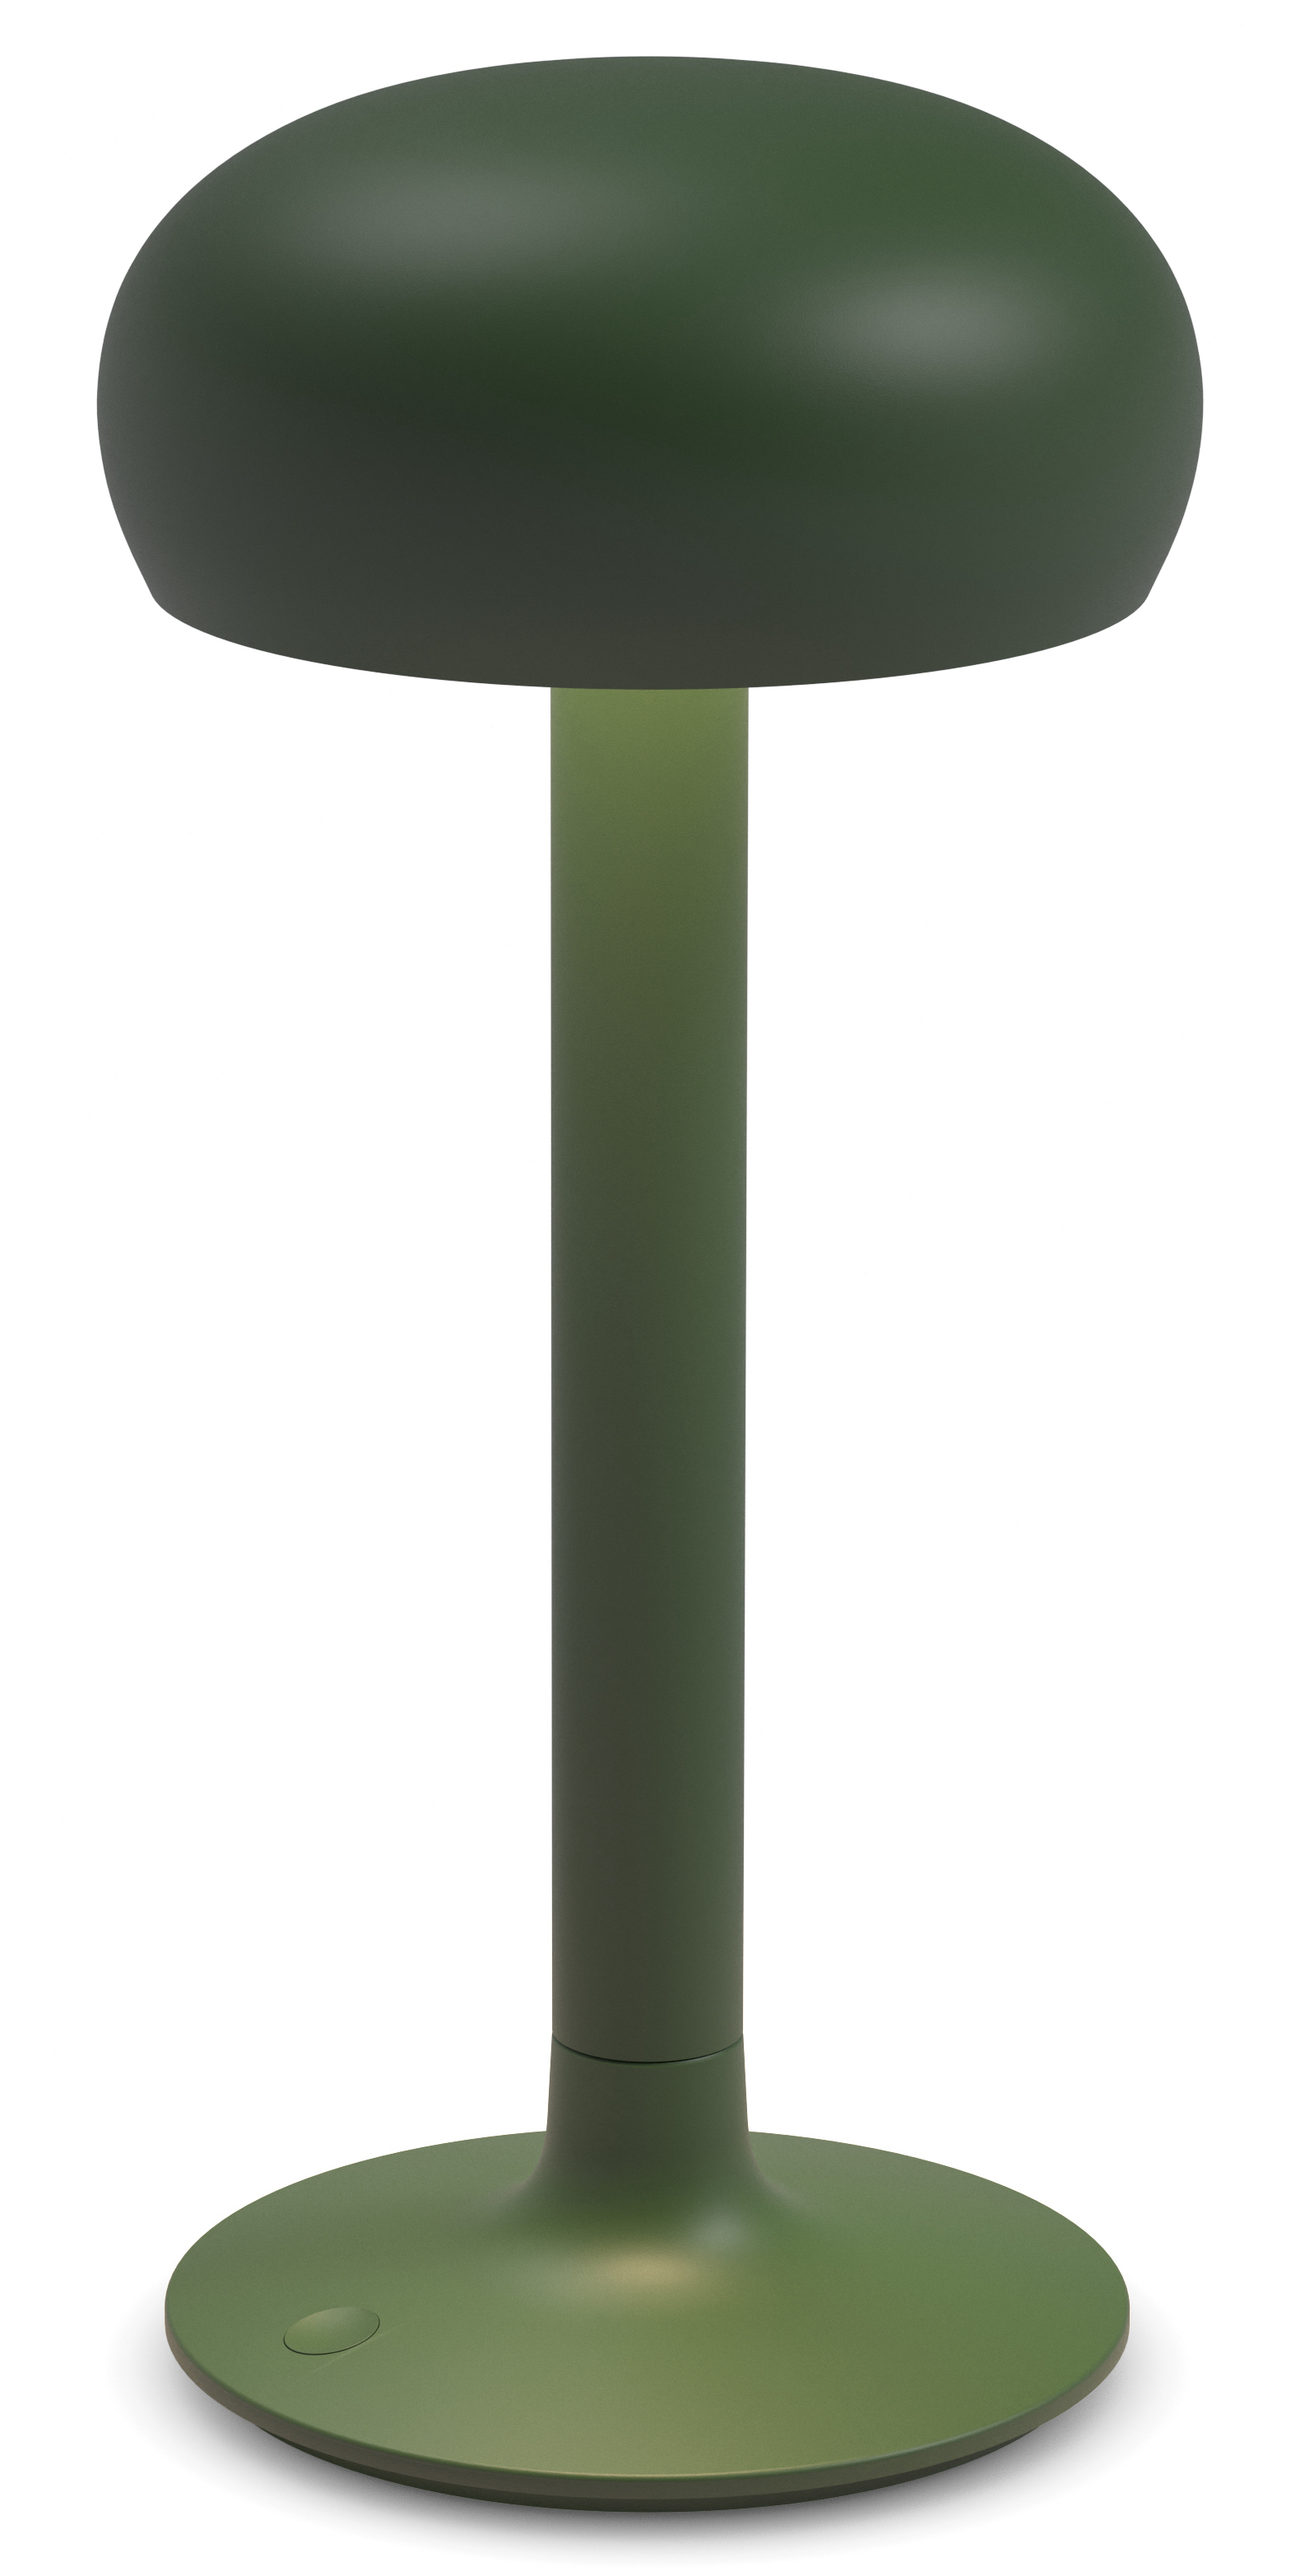 EVA SOLO LED lampička Emendo nabíjecí tmavě zelená